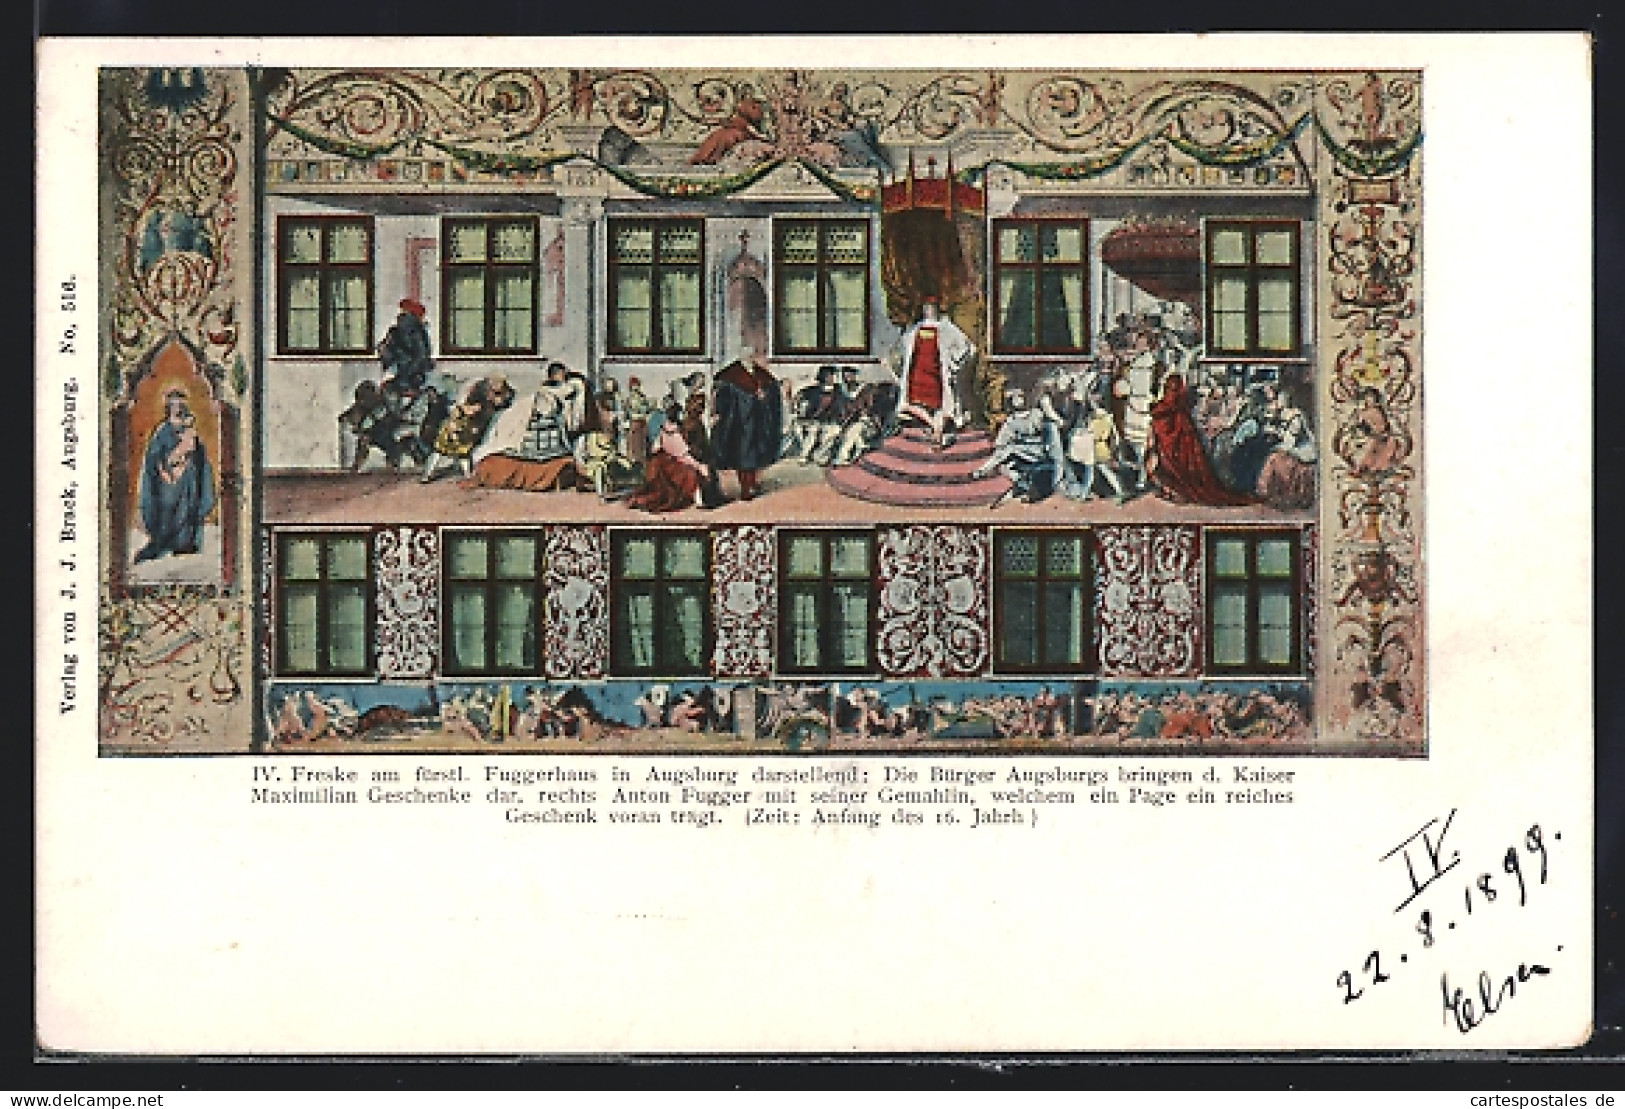 AK Augsburg, IV. Freske Am Fürstl. Fuggerhaus, Die Bürger Augsburgs Bringen D. Kaiser Maximilian Geschenke Dar  - Augsburg